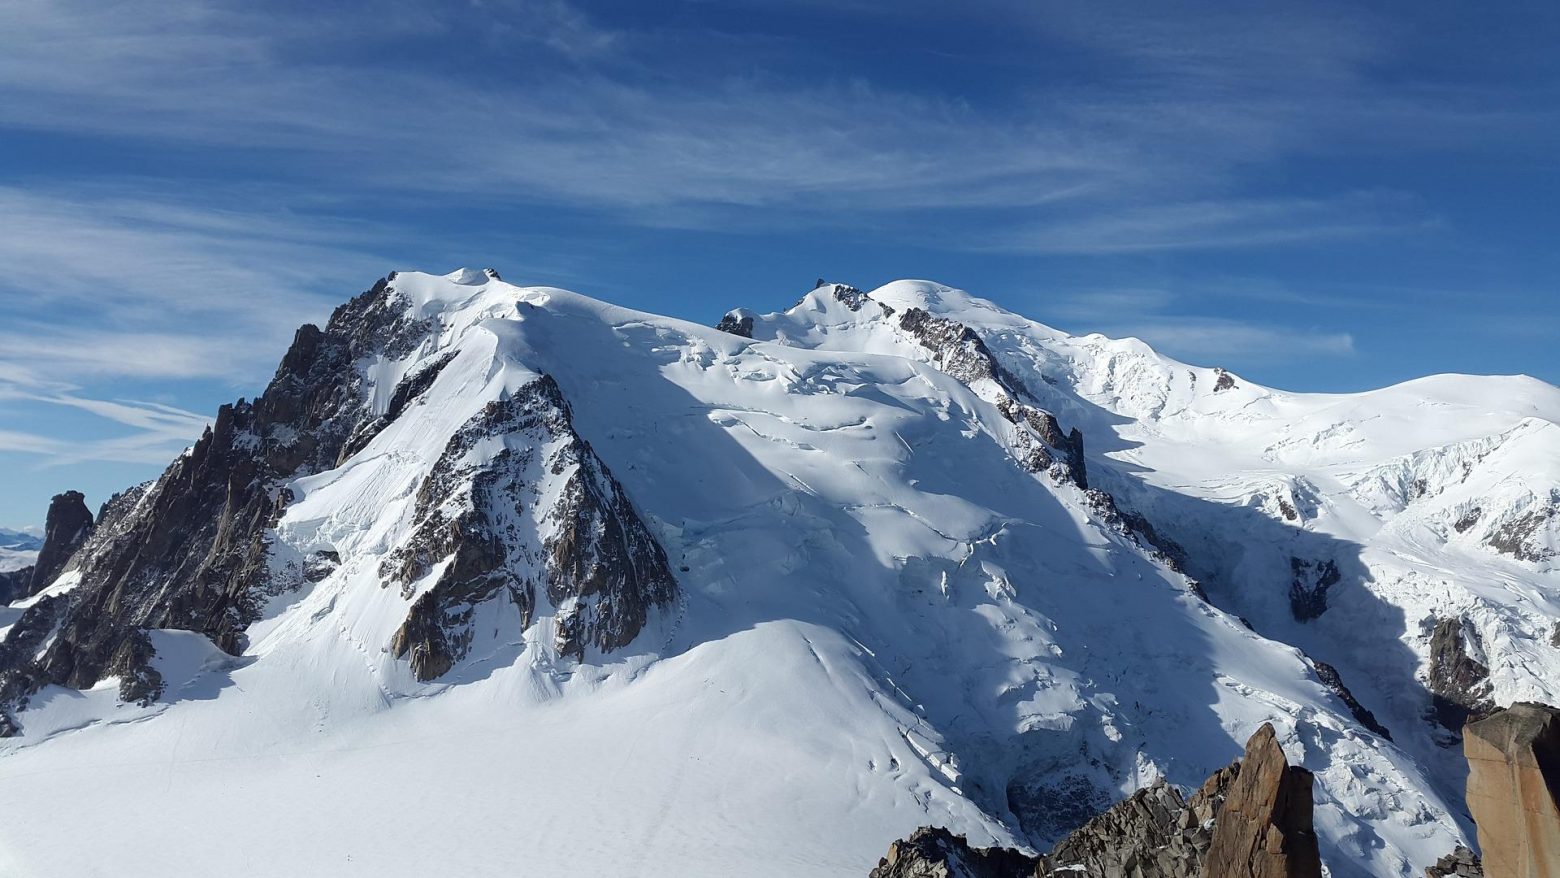 Γαλλία: Δήμαρχος ζητά προκαταβολή 15.000 ευρώ για όσους επιθυμούν να ανέβουν στο όρος «Mont Blanc»